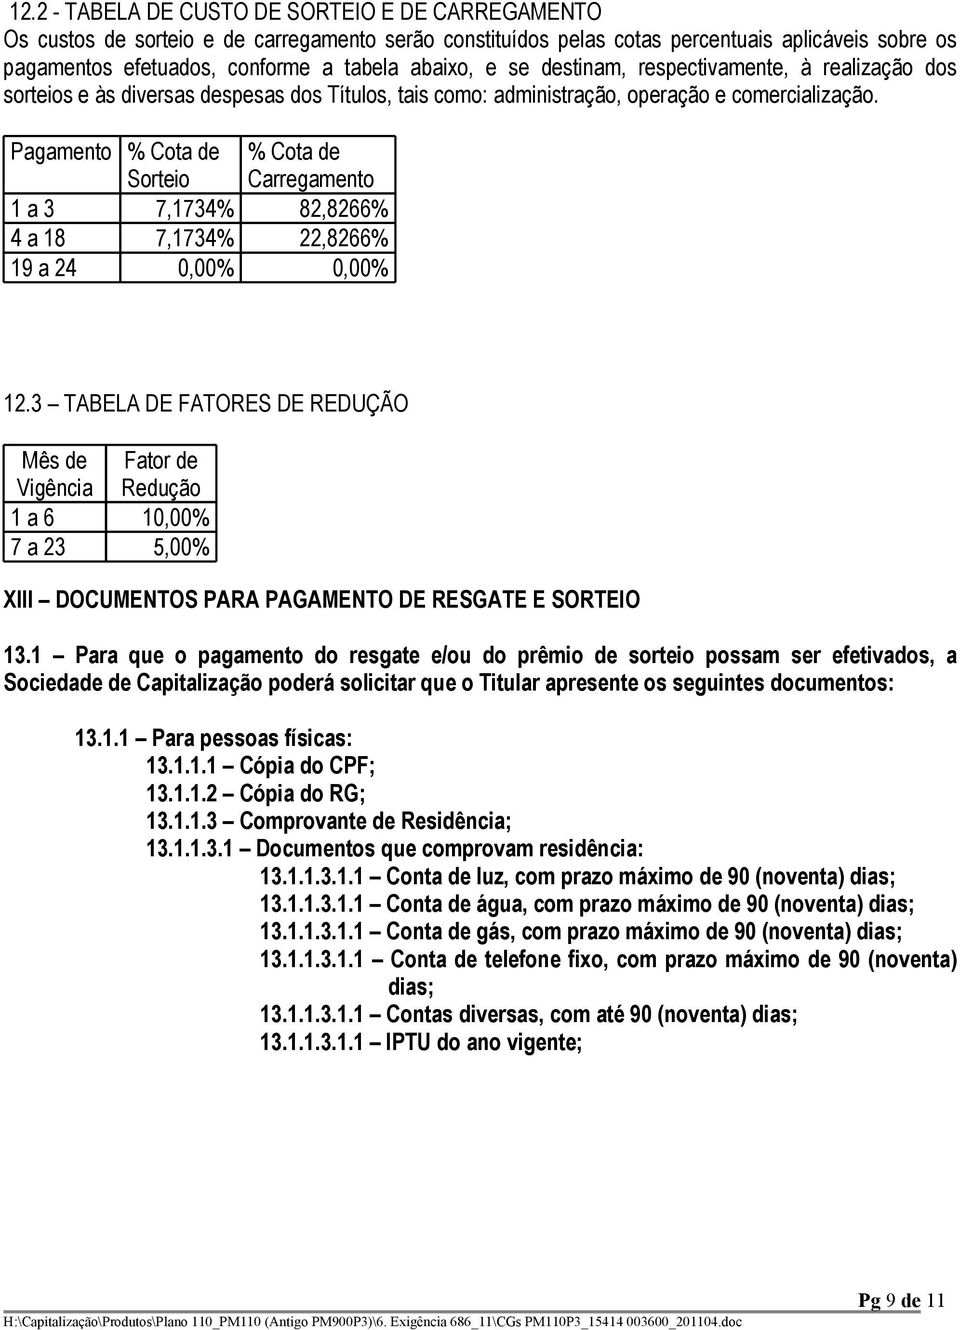 Pagamento % Cota de Sorteio % Cota de Carregamento 1 a 3 7,1734% 82,8266% 4 a 18 7,1734% 22,8266% 19 a 24 0,00% 0,00% 12.